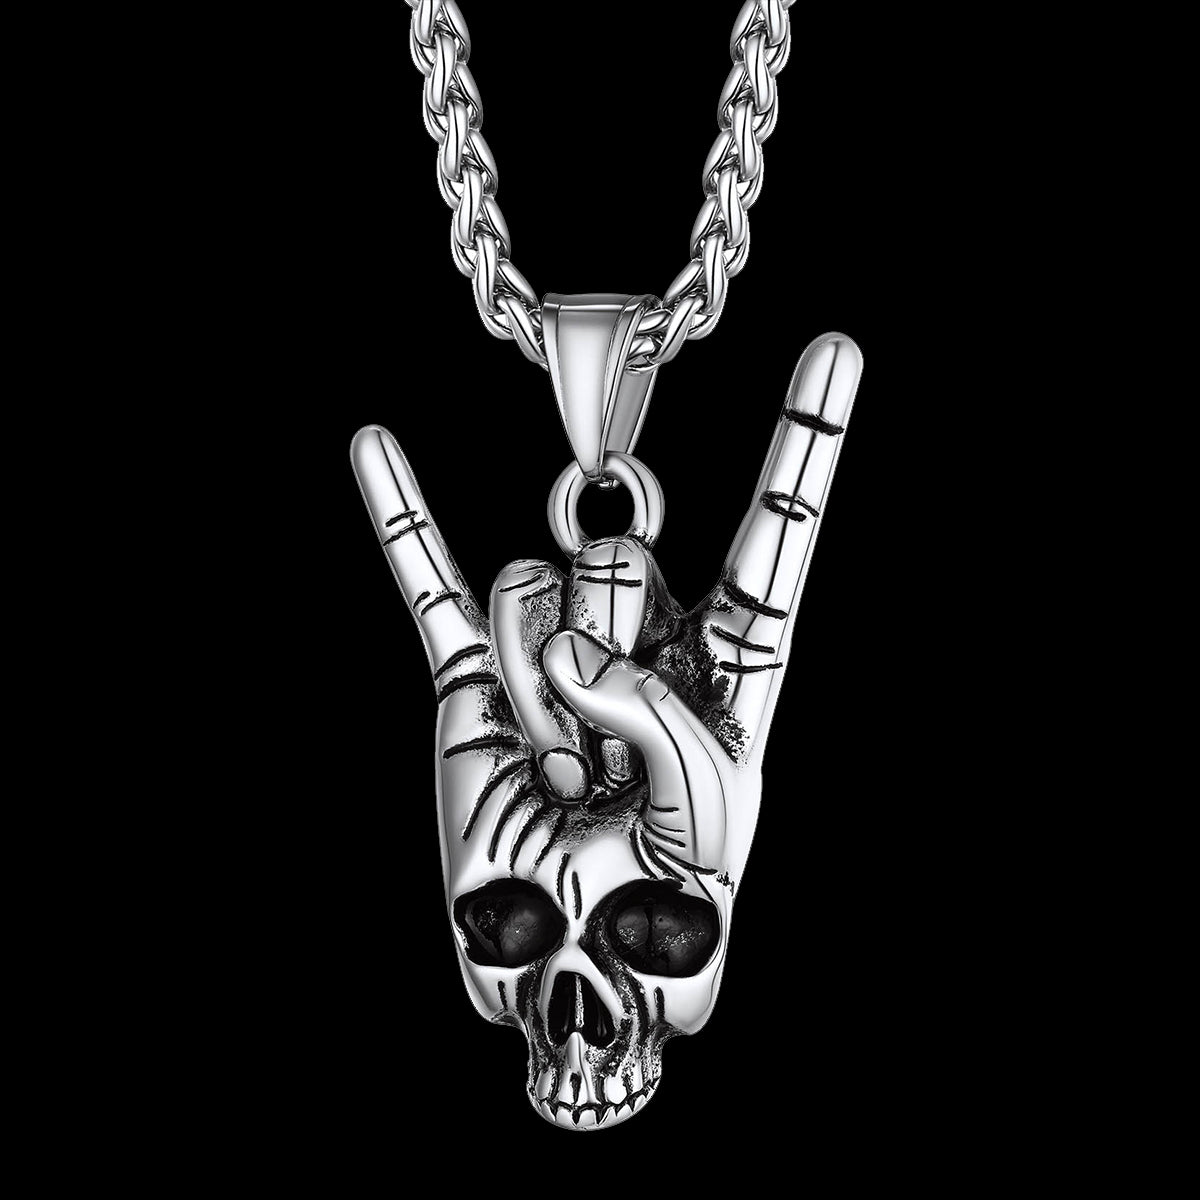 files/FaithHeart-Rock-Hand-Skeleton-Skull-Necklace.jpg